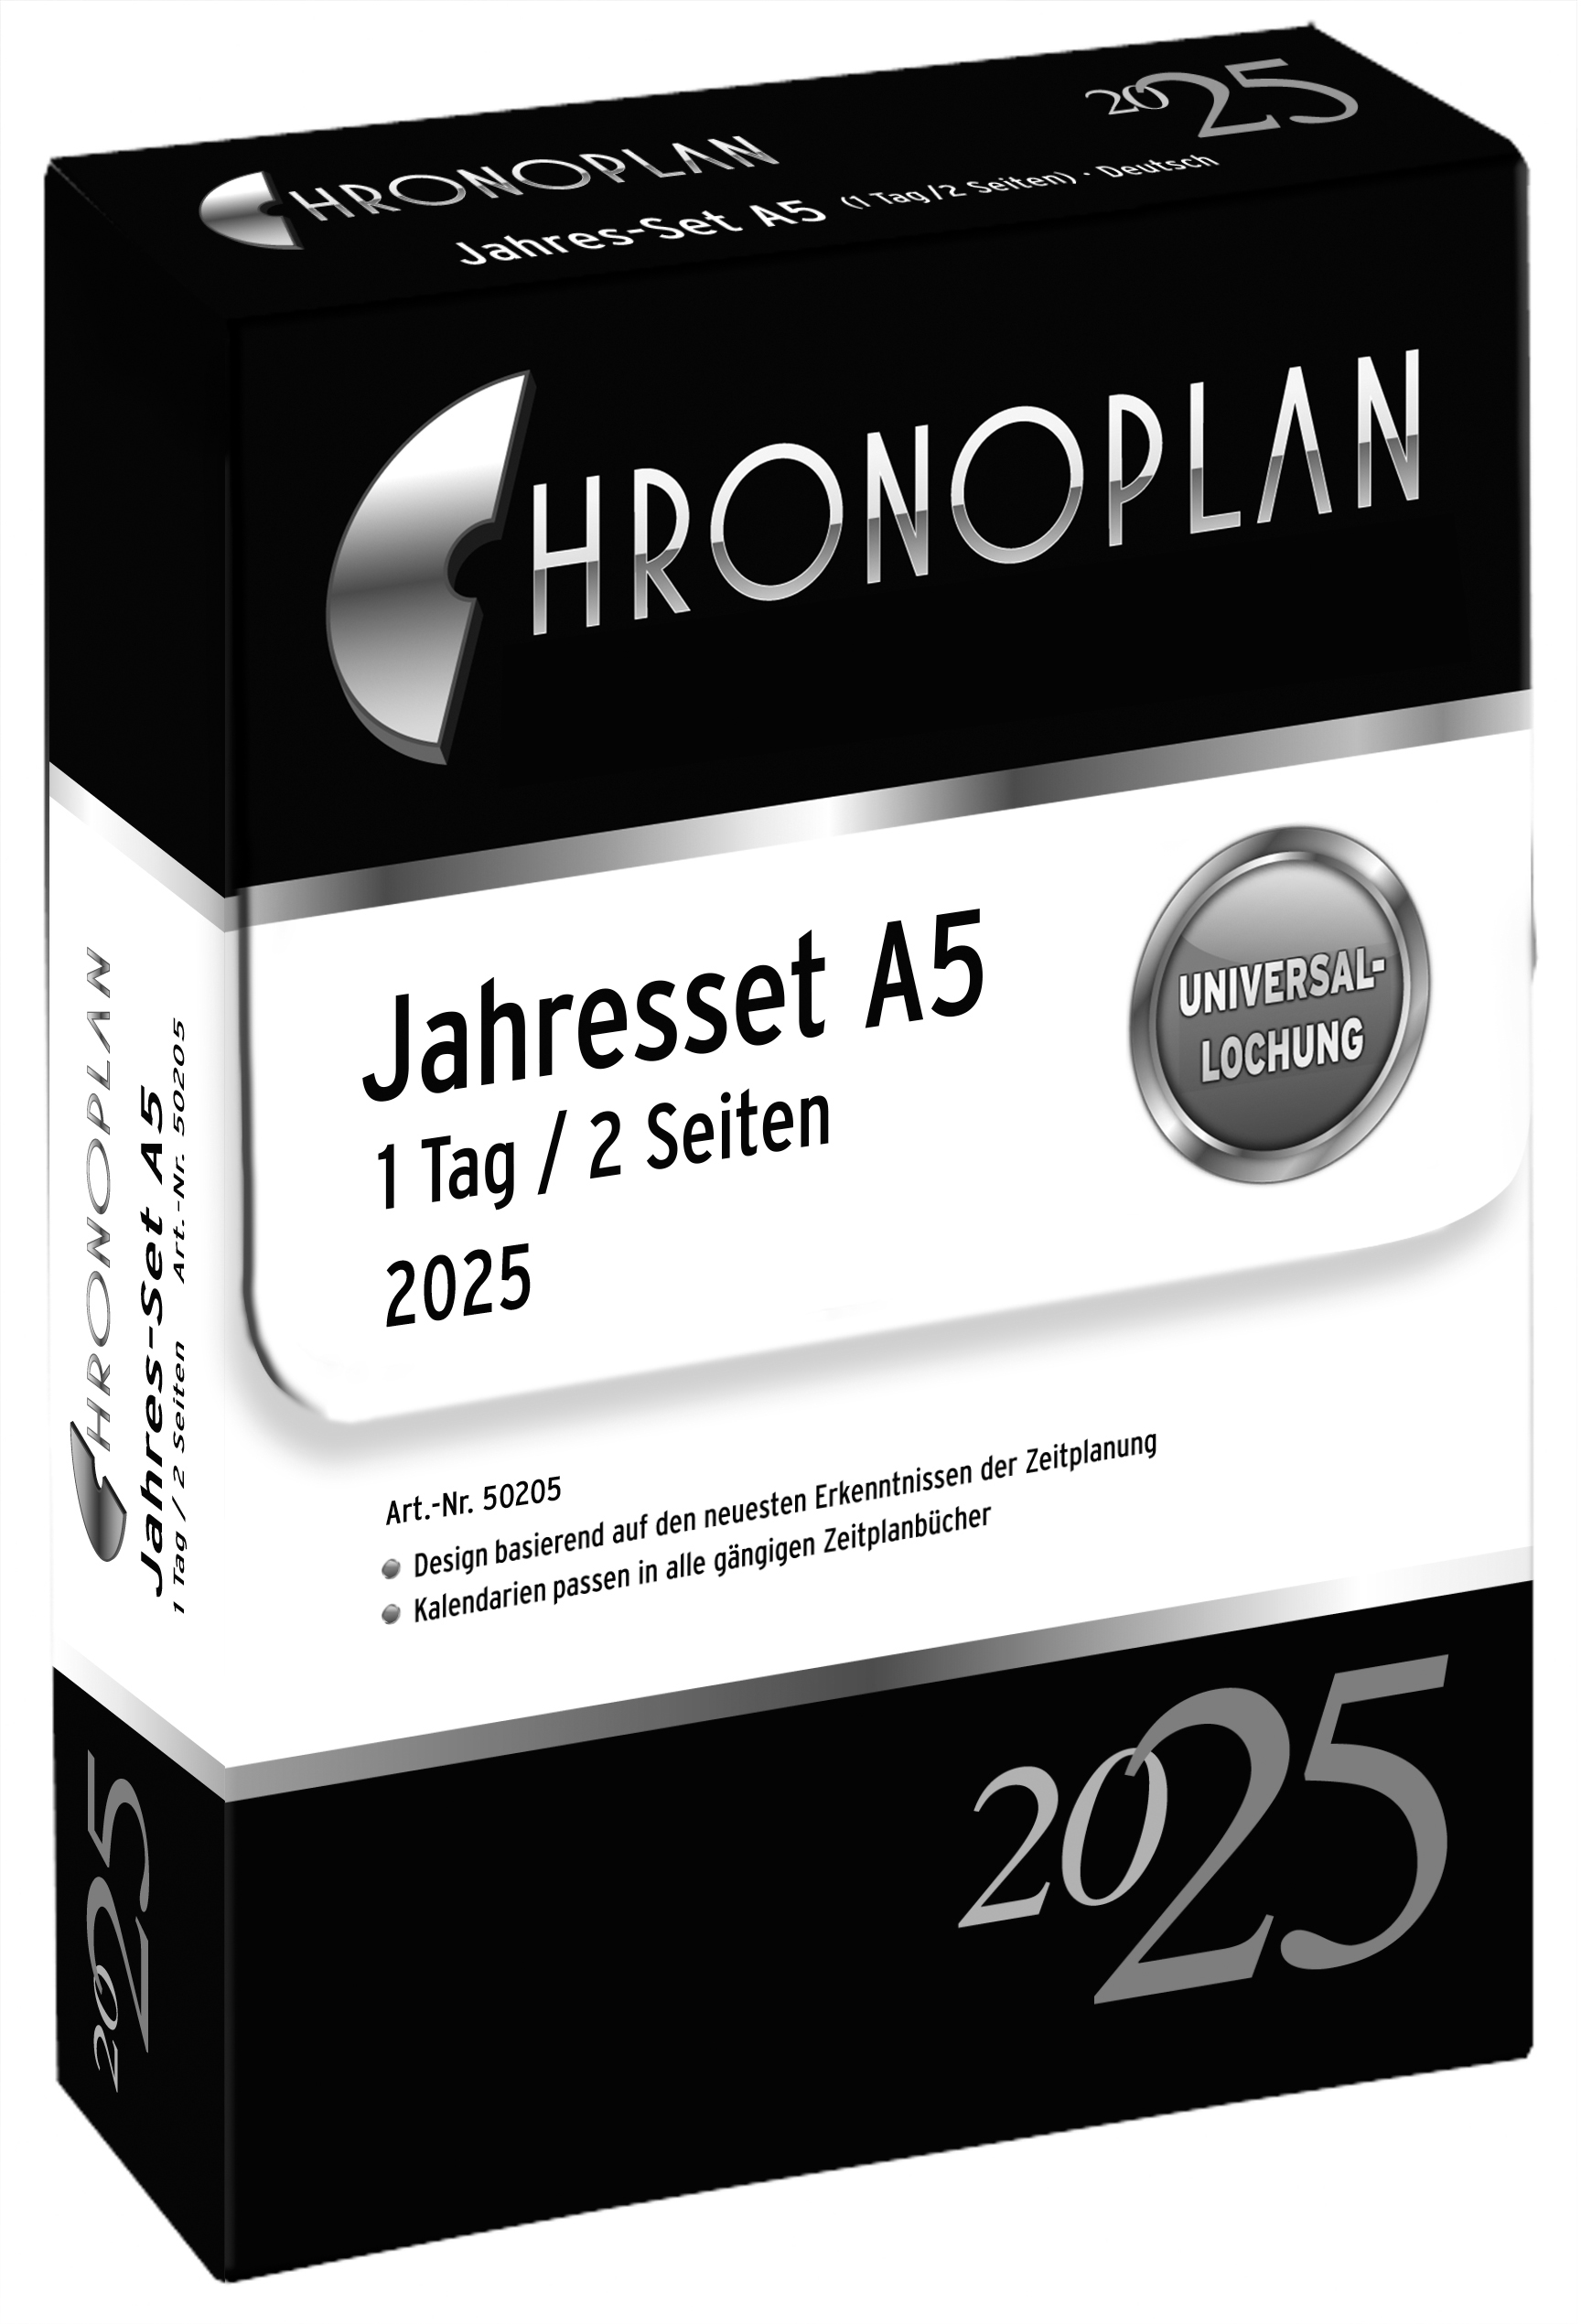 CHRONOPLAN Contenu box 2025 50205Z.25 1T/1S A5